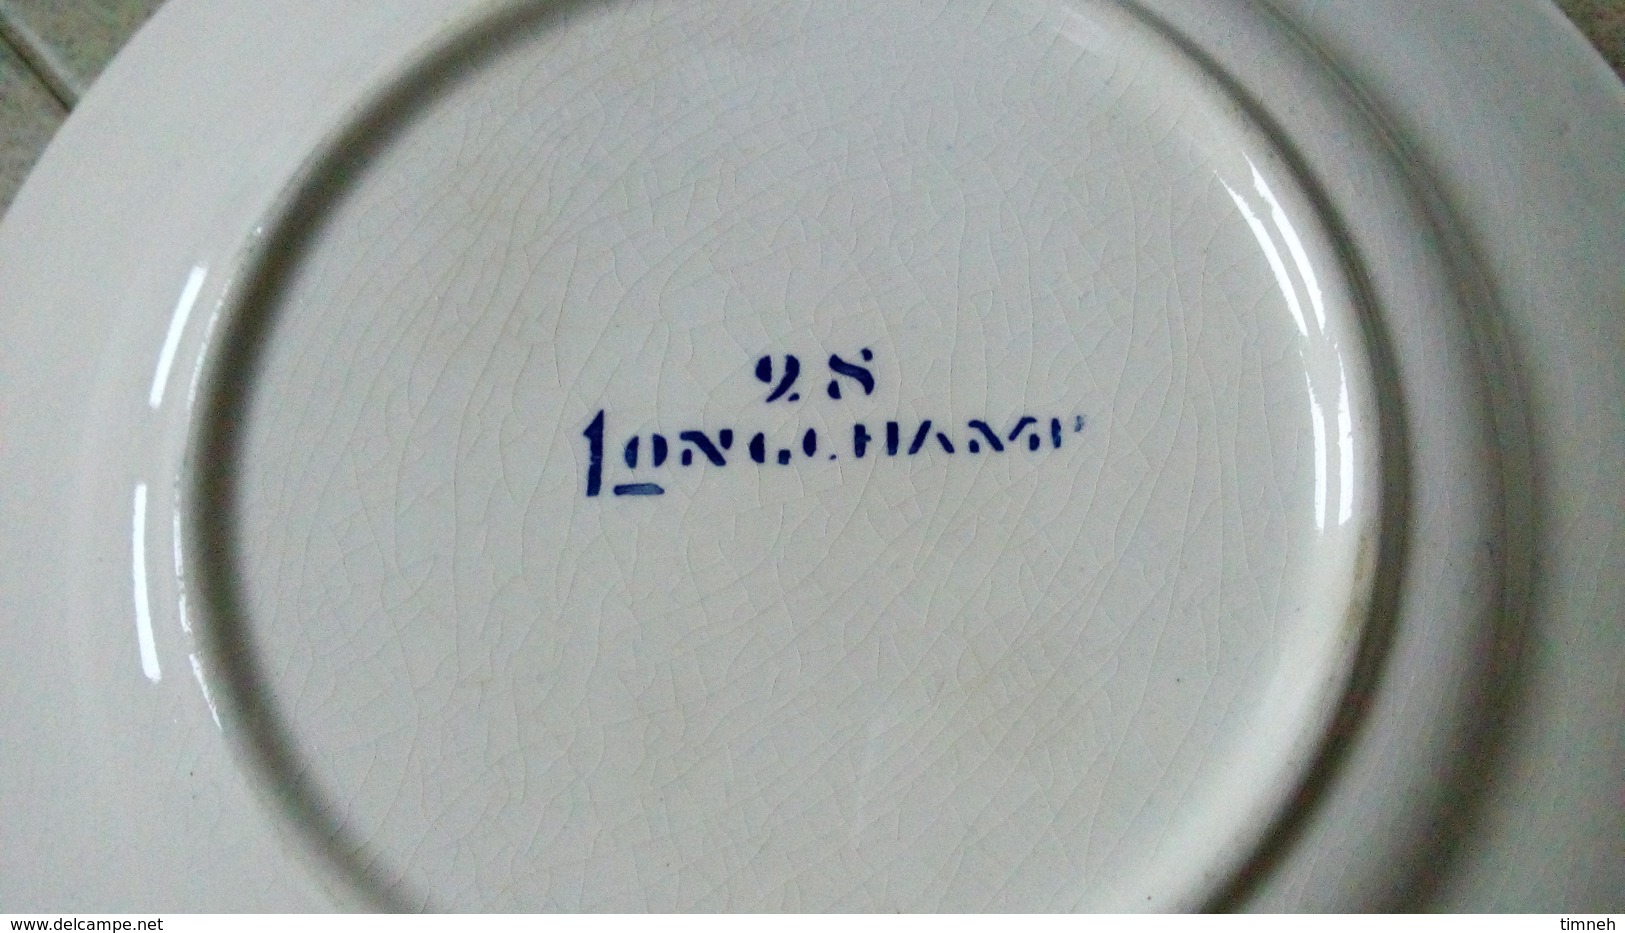 LONGCHAMP CERISES N°28 - 4 petites assiettes à dessert 20cm - céramique - décor cerise peint main